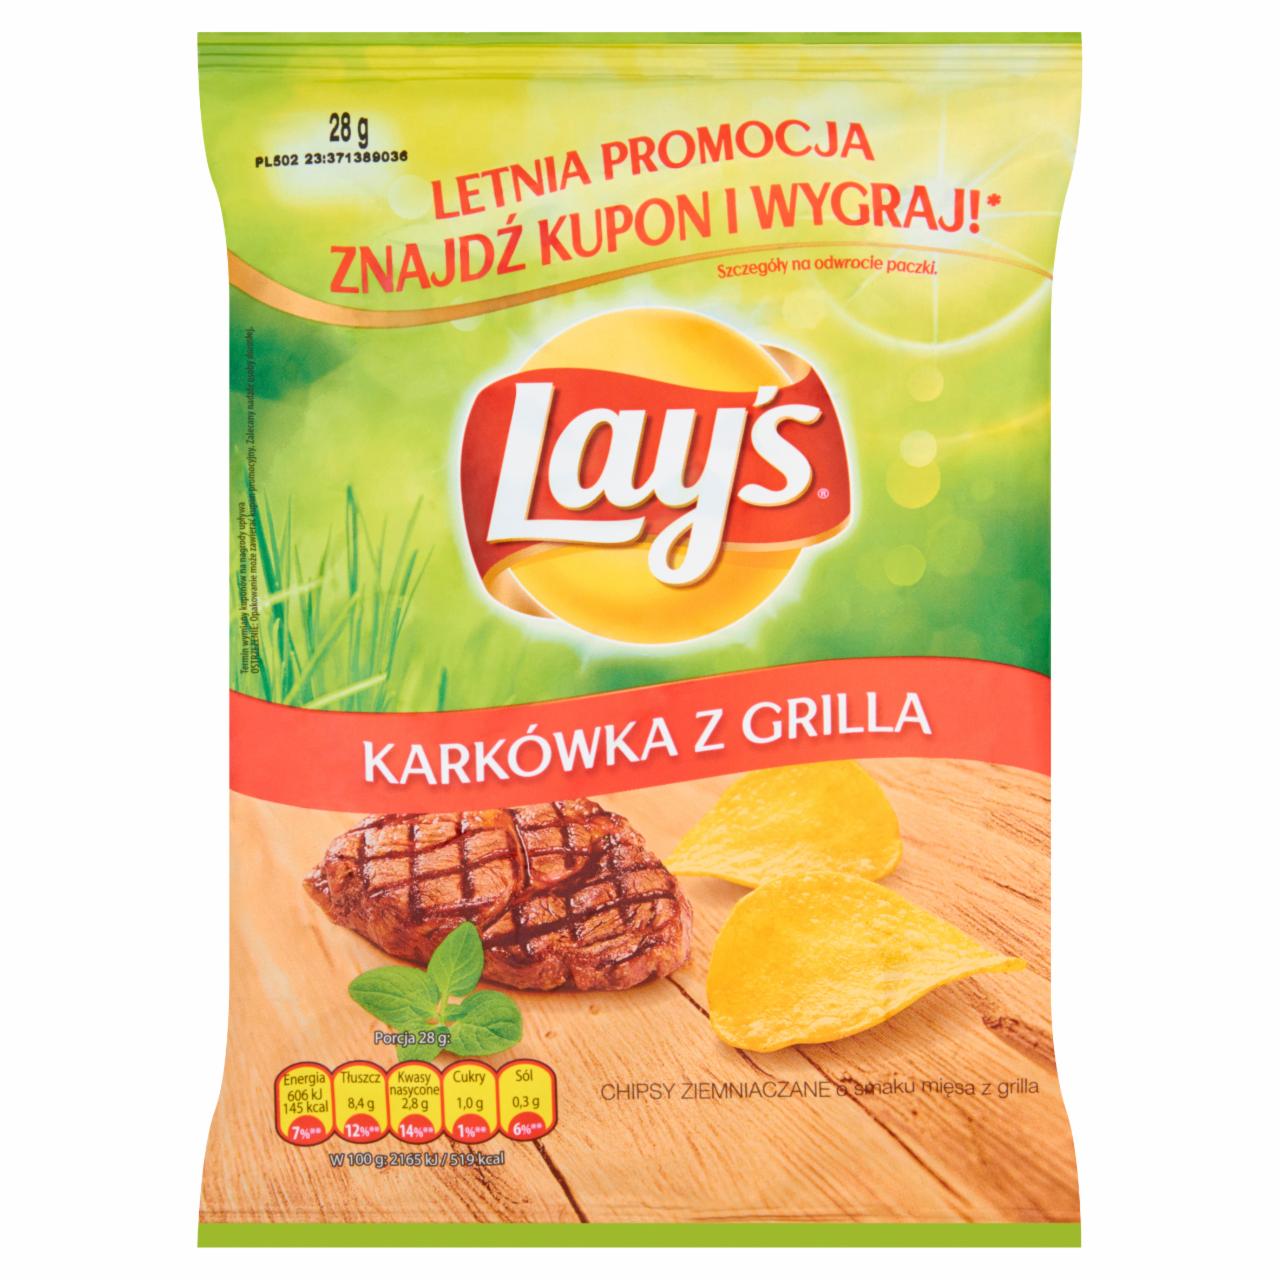 Zdjęcia - Lay's Karkówka z grilla Chipsy ziemniaczane 28 g